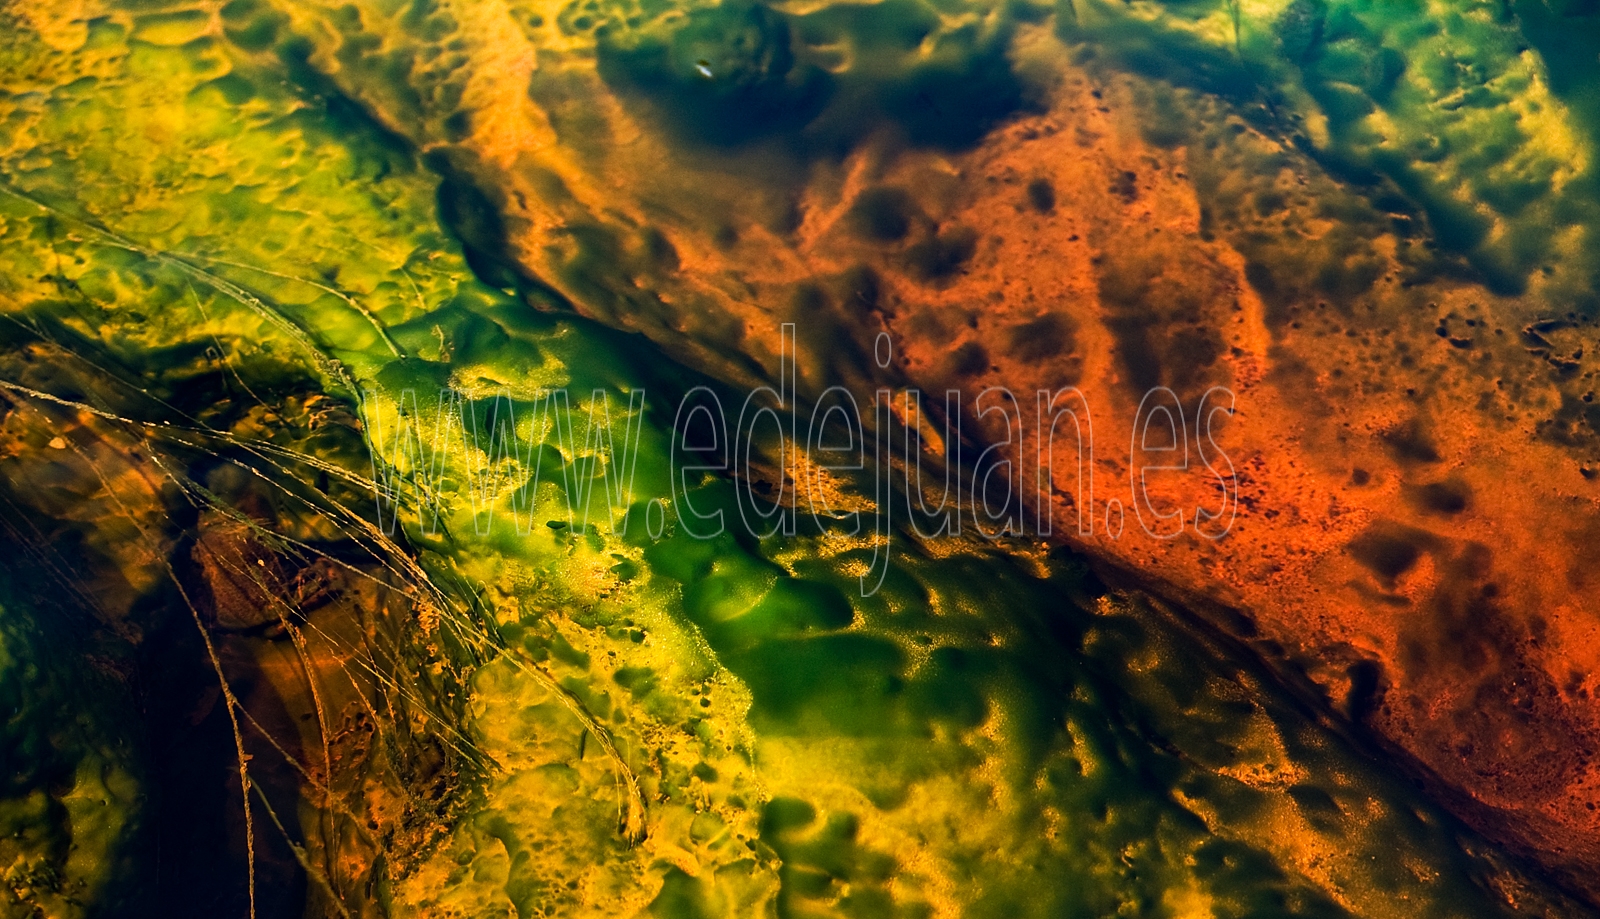 Texturas y colores en el Río Tinto, fotografía de acercamiento con cierto aire abstracto. 
Minas de Riontinto, Huelva.